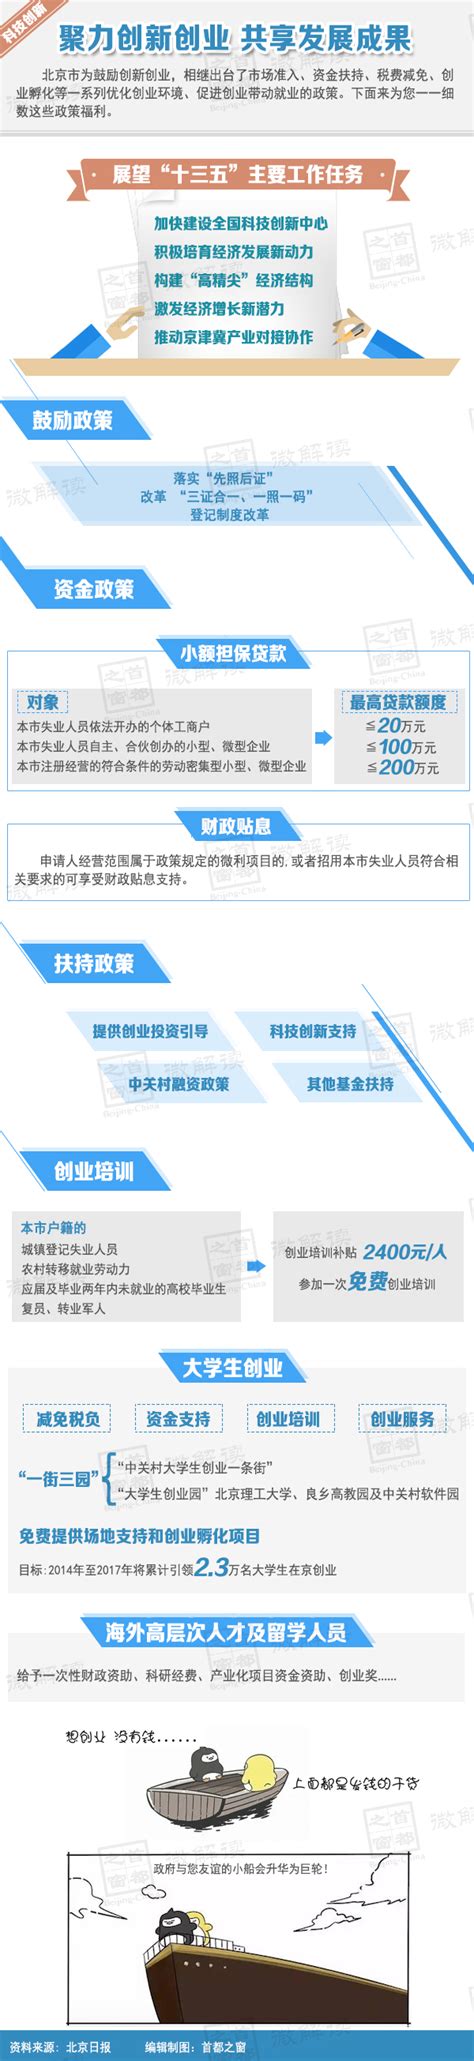 聚力创新创业 共享发展成果_规划解读_首都之窗_北京市人民政府门户网站